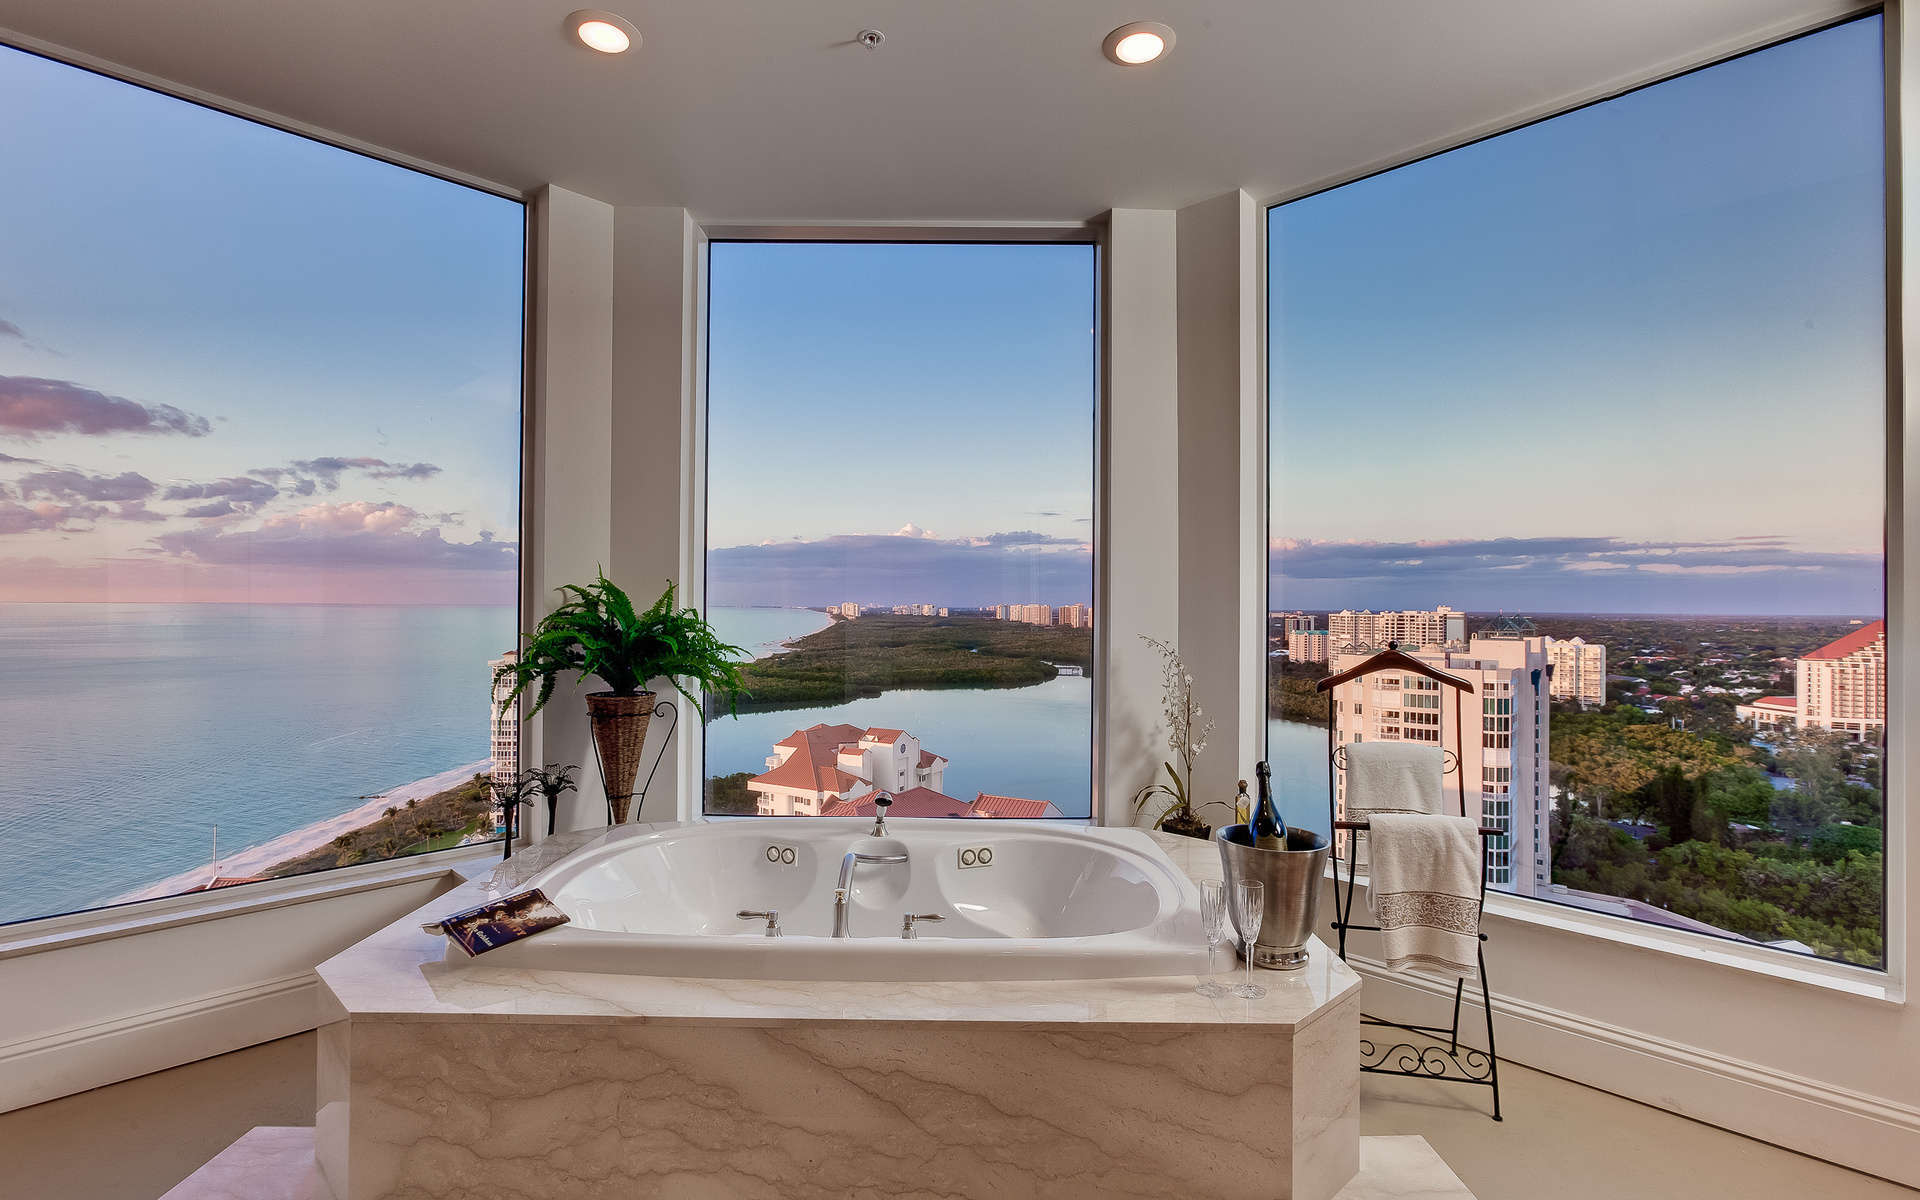 Bathroom Vanity Ocean View De